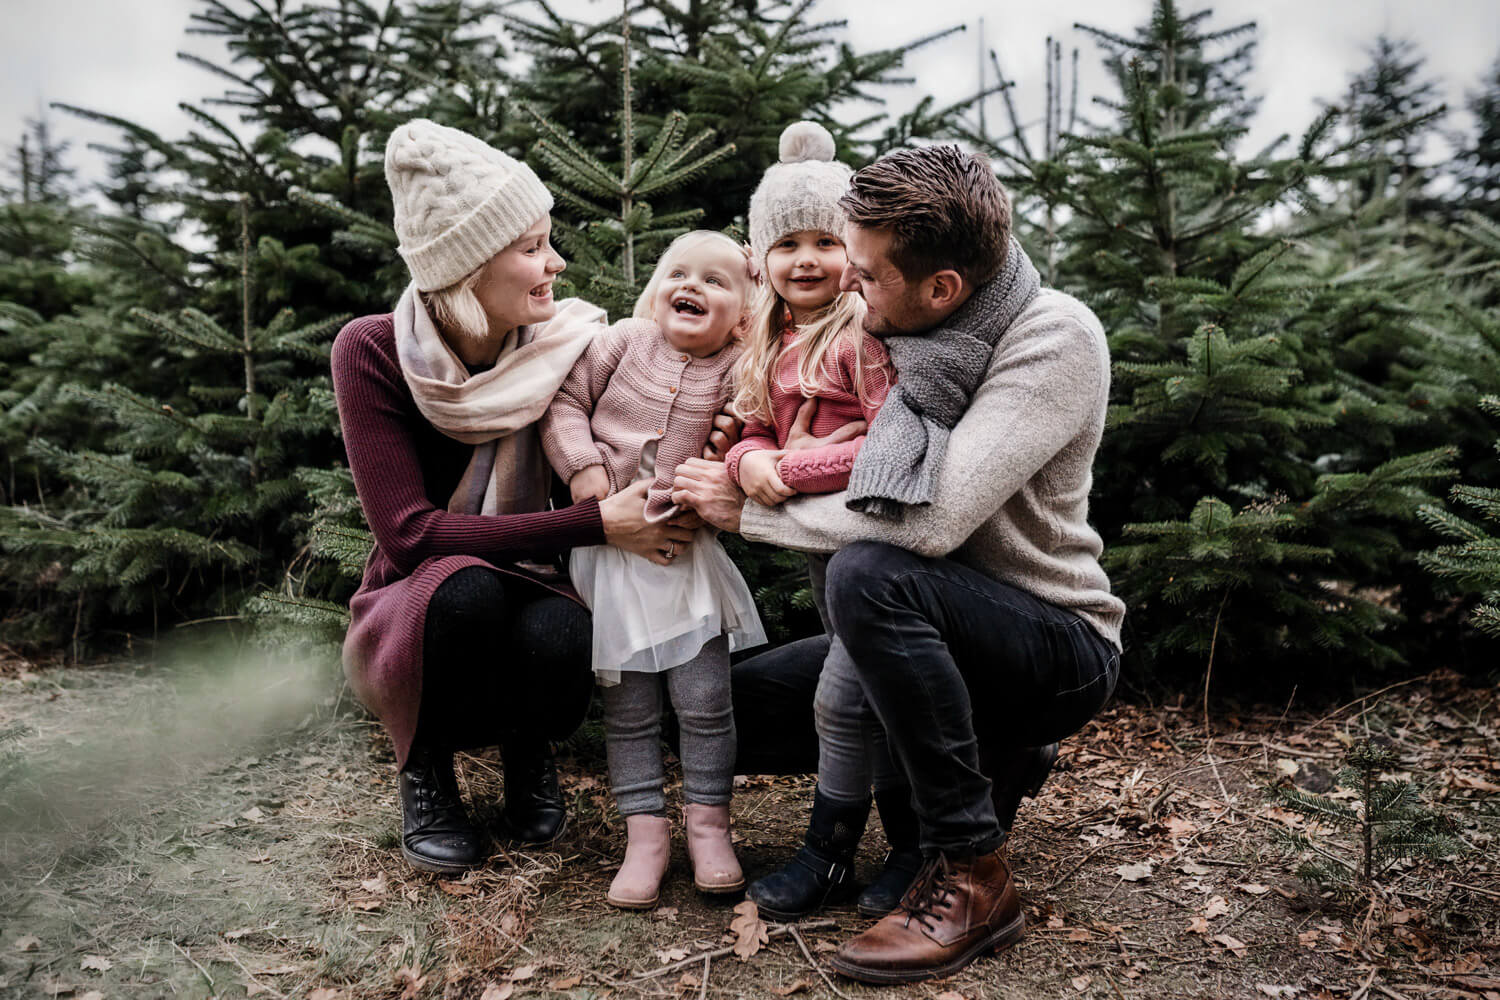 Vierköpfige Familie hockt draußen zwischen kleinen Weihnachtsbäumen, zwei Töchter stehen zwischen ihren Eltern, lachen